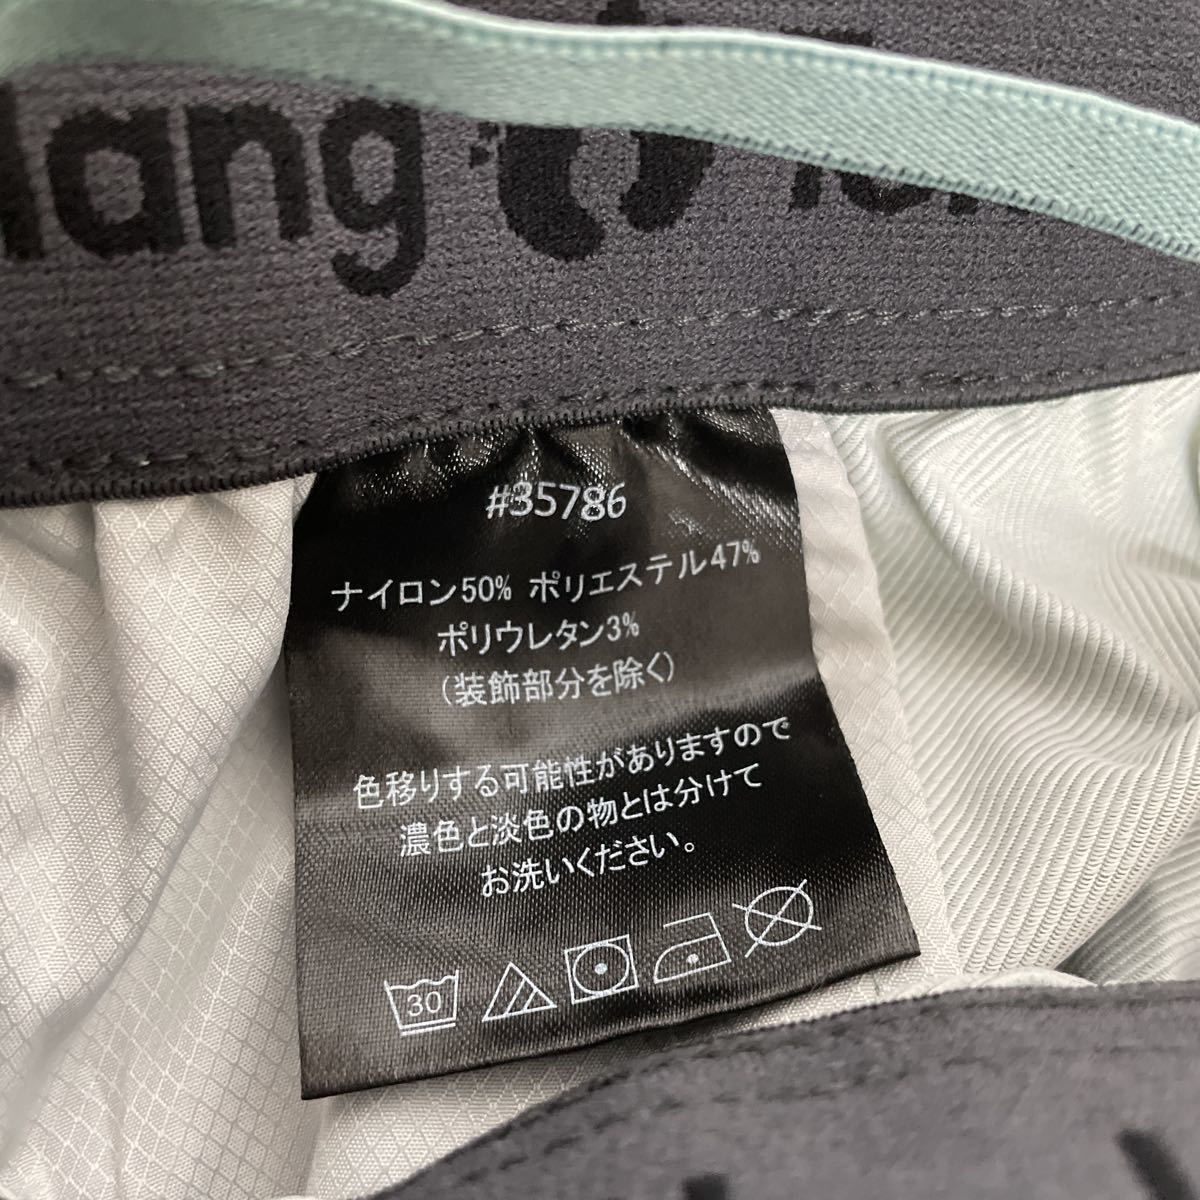  новый товар #Hang Ten мужской шорты M зеленый активный брюки 